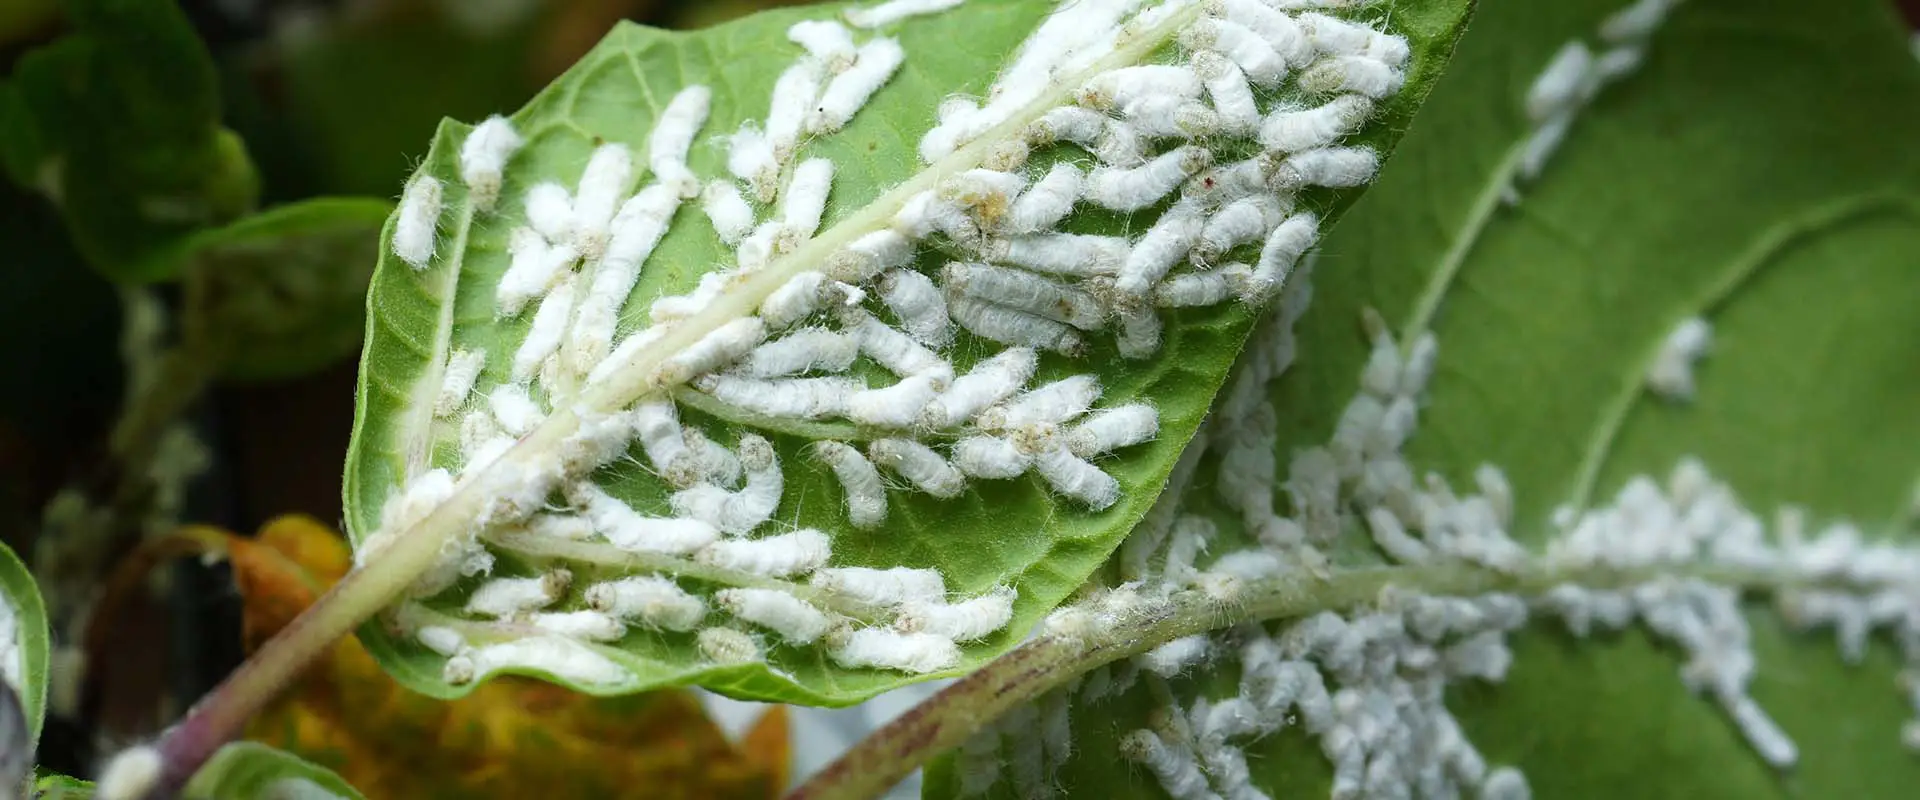 Treating Houseplant Pest Like Mealy Bugs